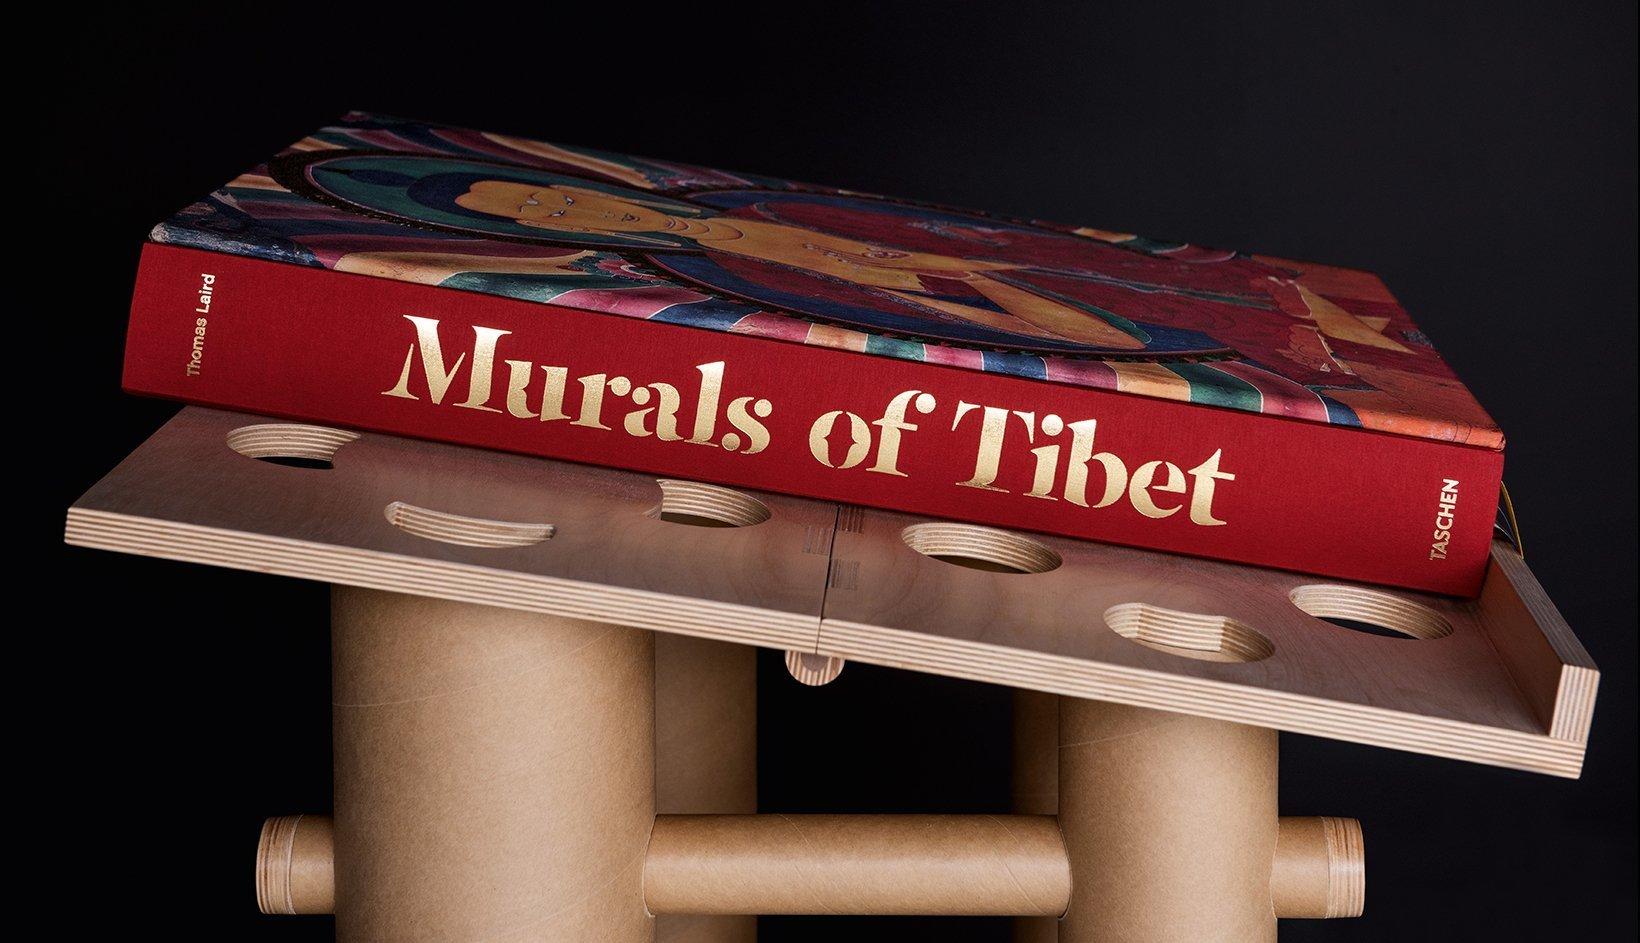 taschen murals of tibet